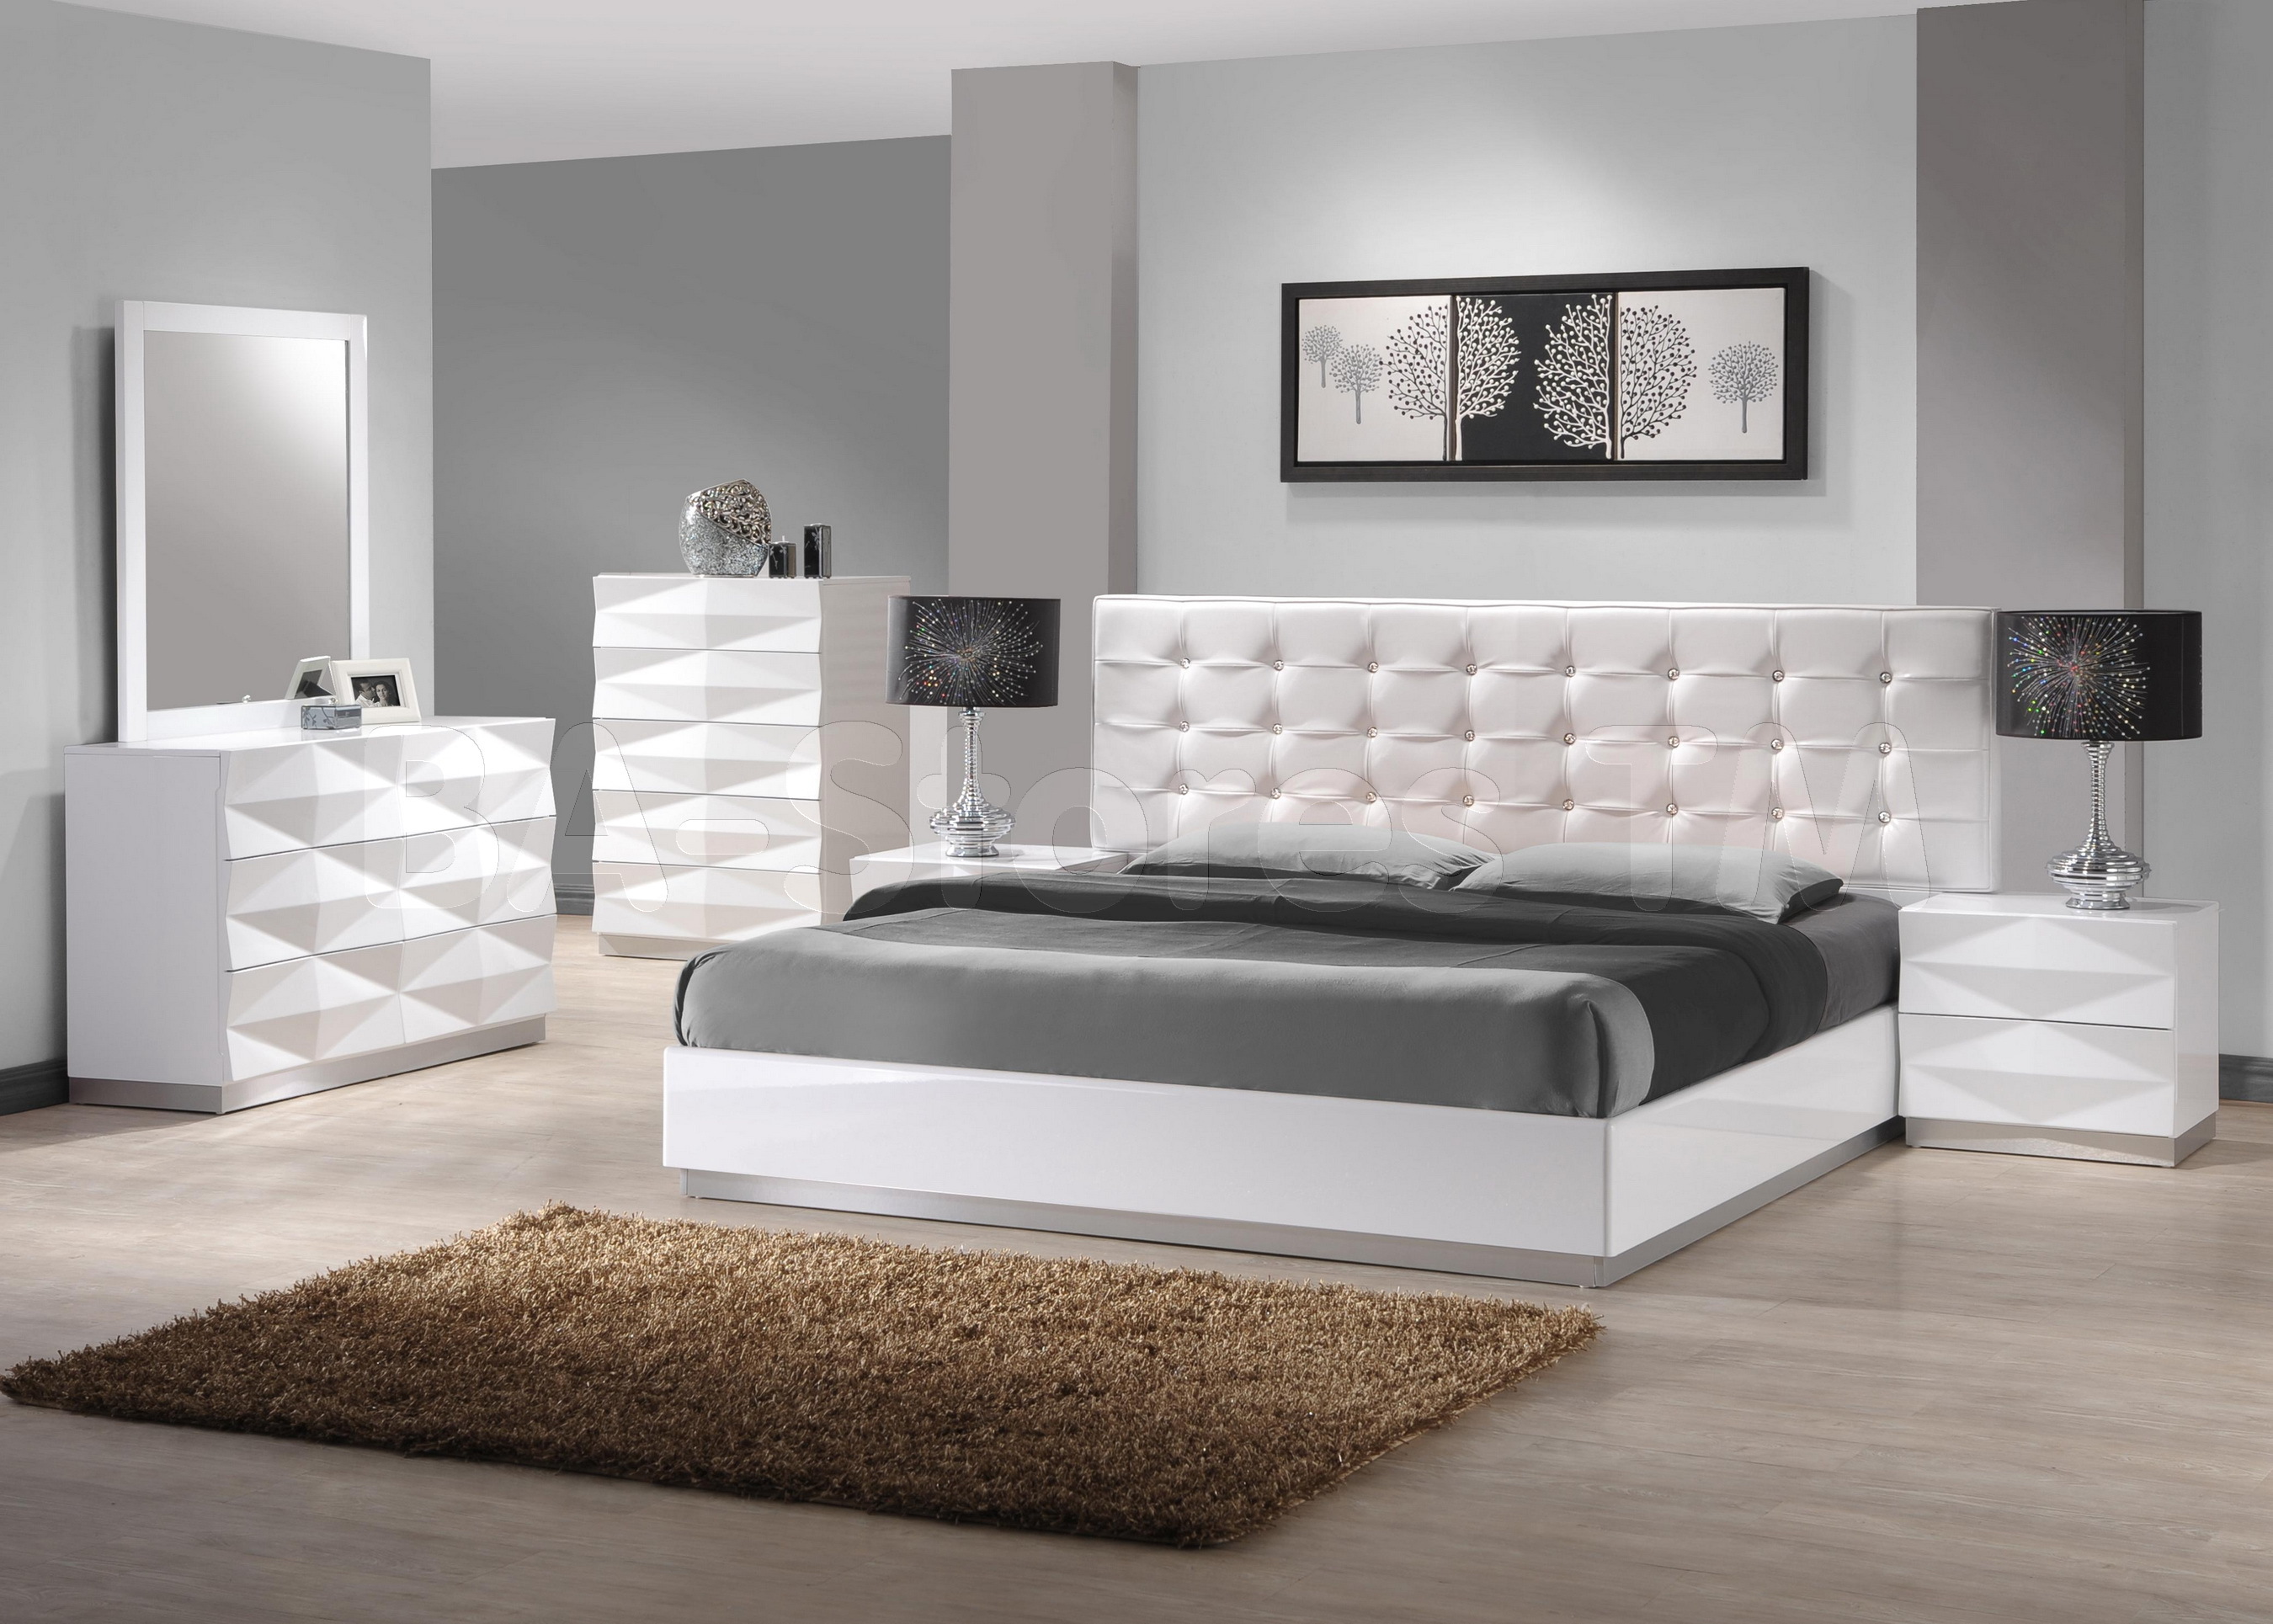 Мебель спальни белый цвет. Спальный гарнитур Panda White Polywood. Белая спальня. Спальни белые современные. Спальня в белом стиле.